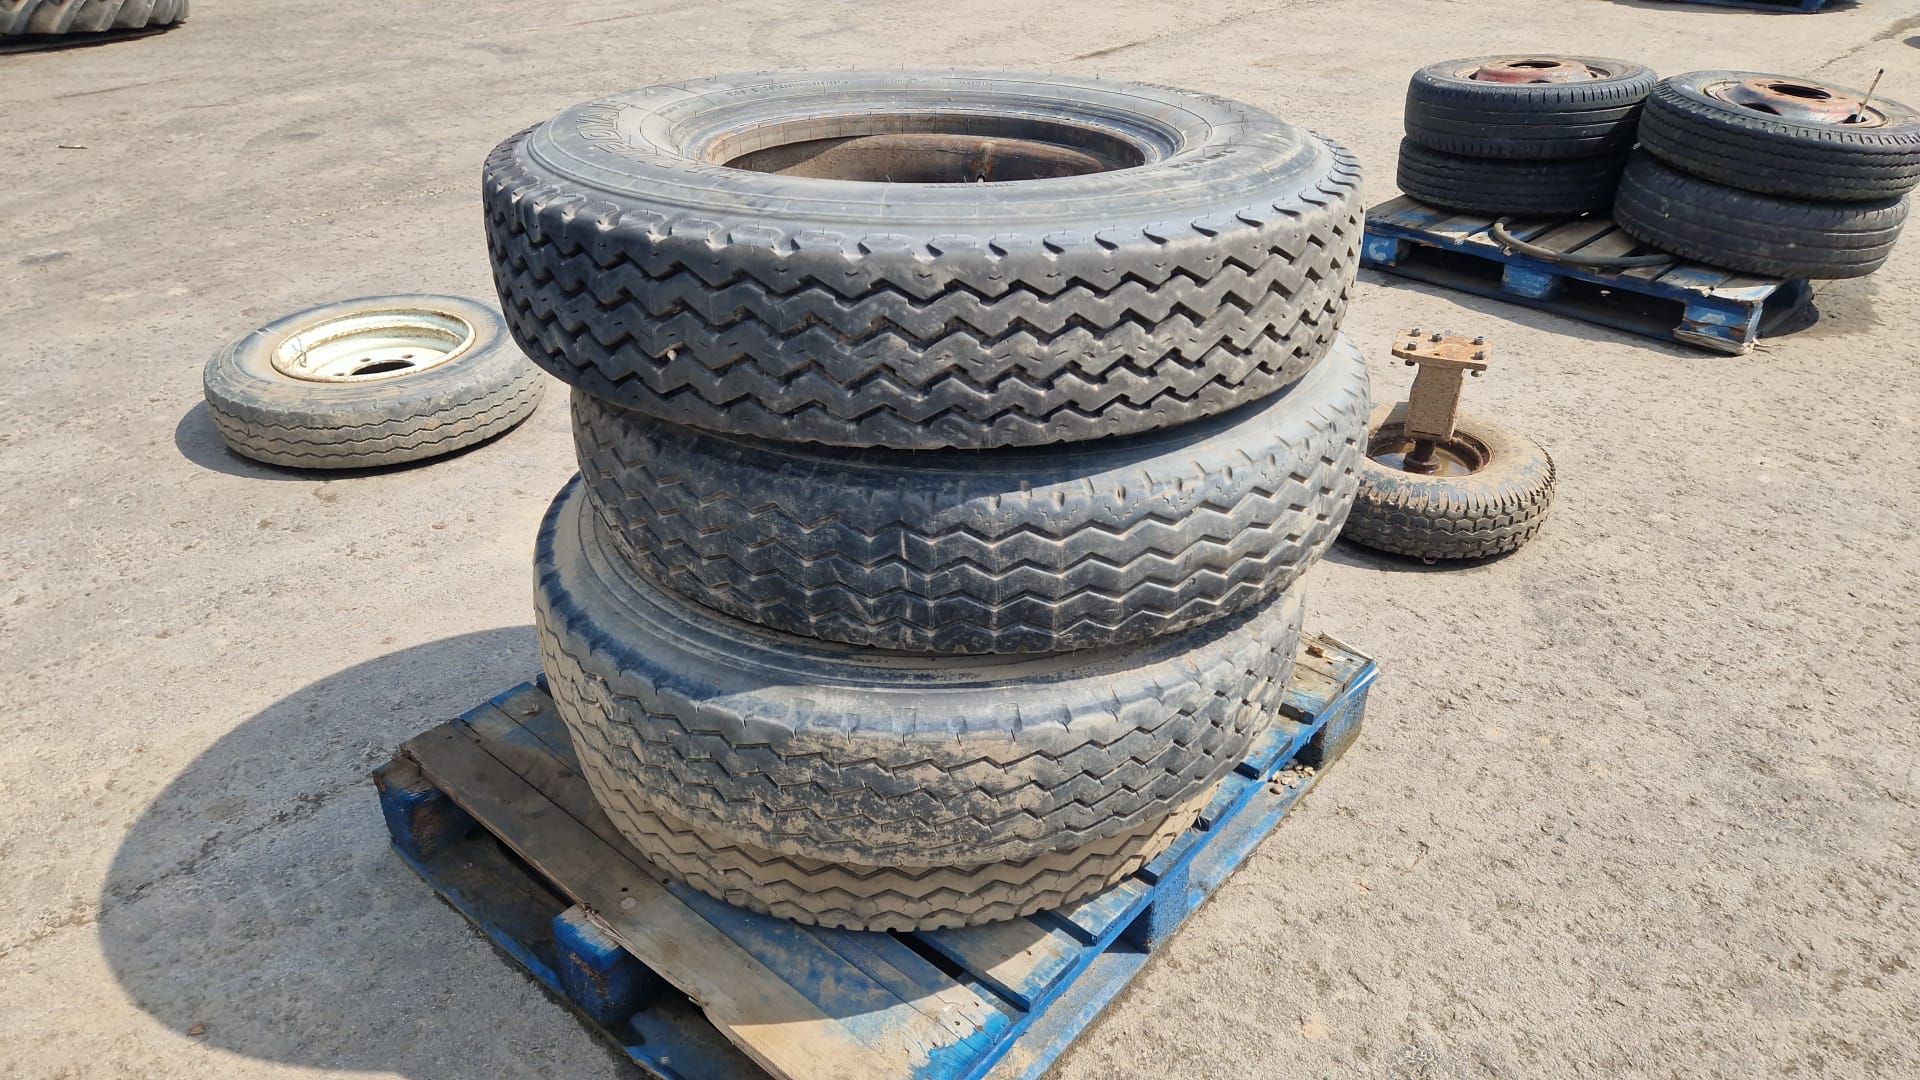 4 x 9.00 R20 tube type tyres